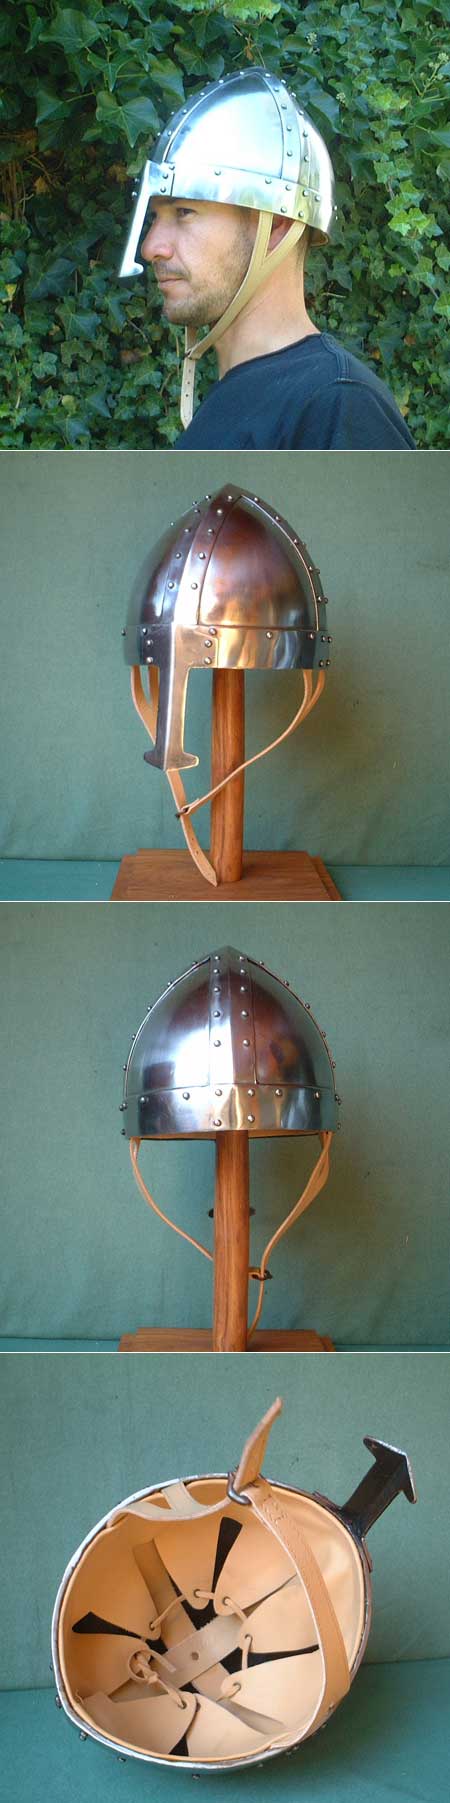 Strong Viking helmet for reenactment